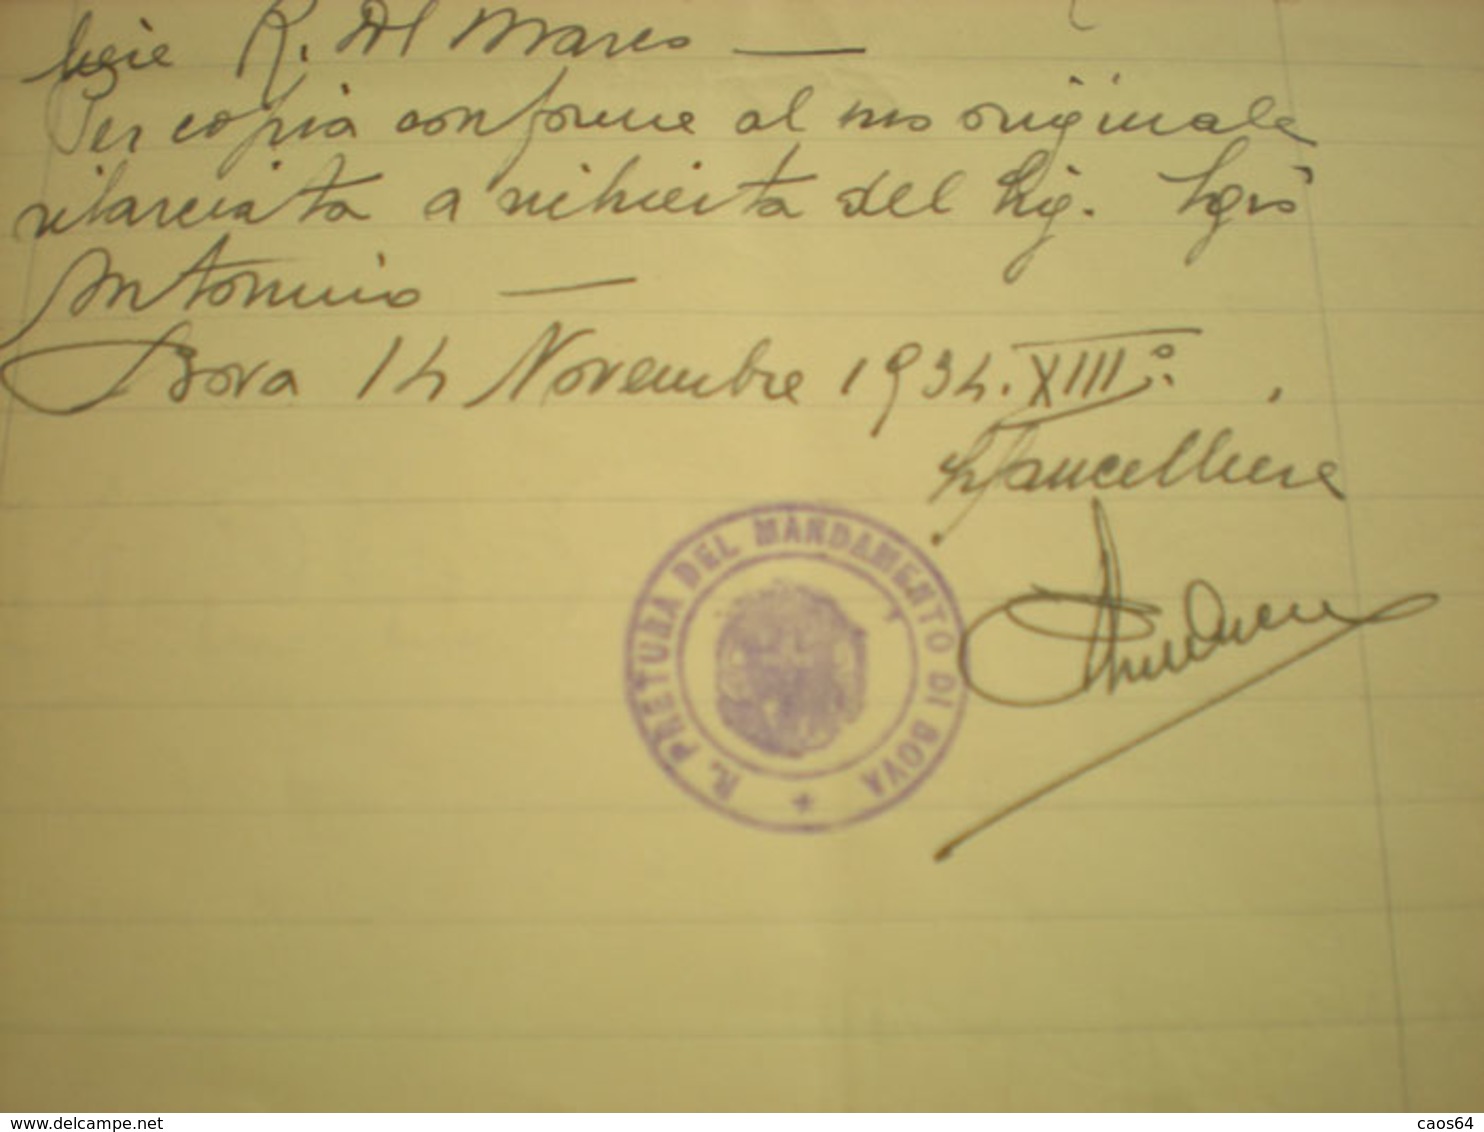 Italia Regno 1934  Carta Bollata Lire 7  Filigrana 1934 XII PMF Timbro Prefettura Bova - Fiscali